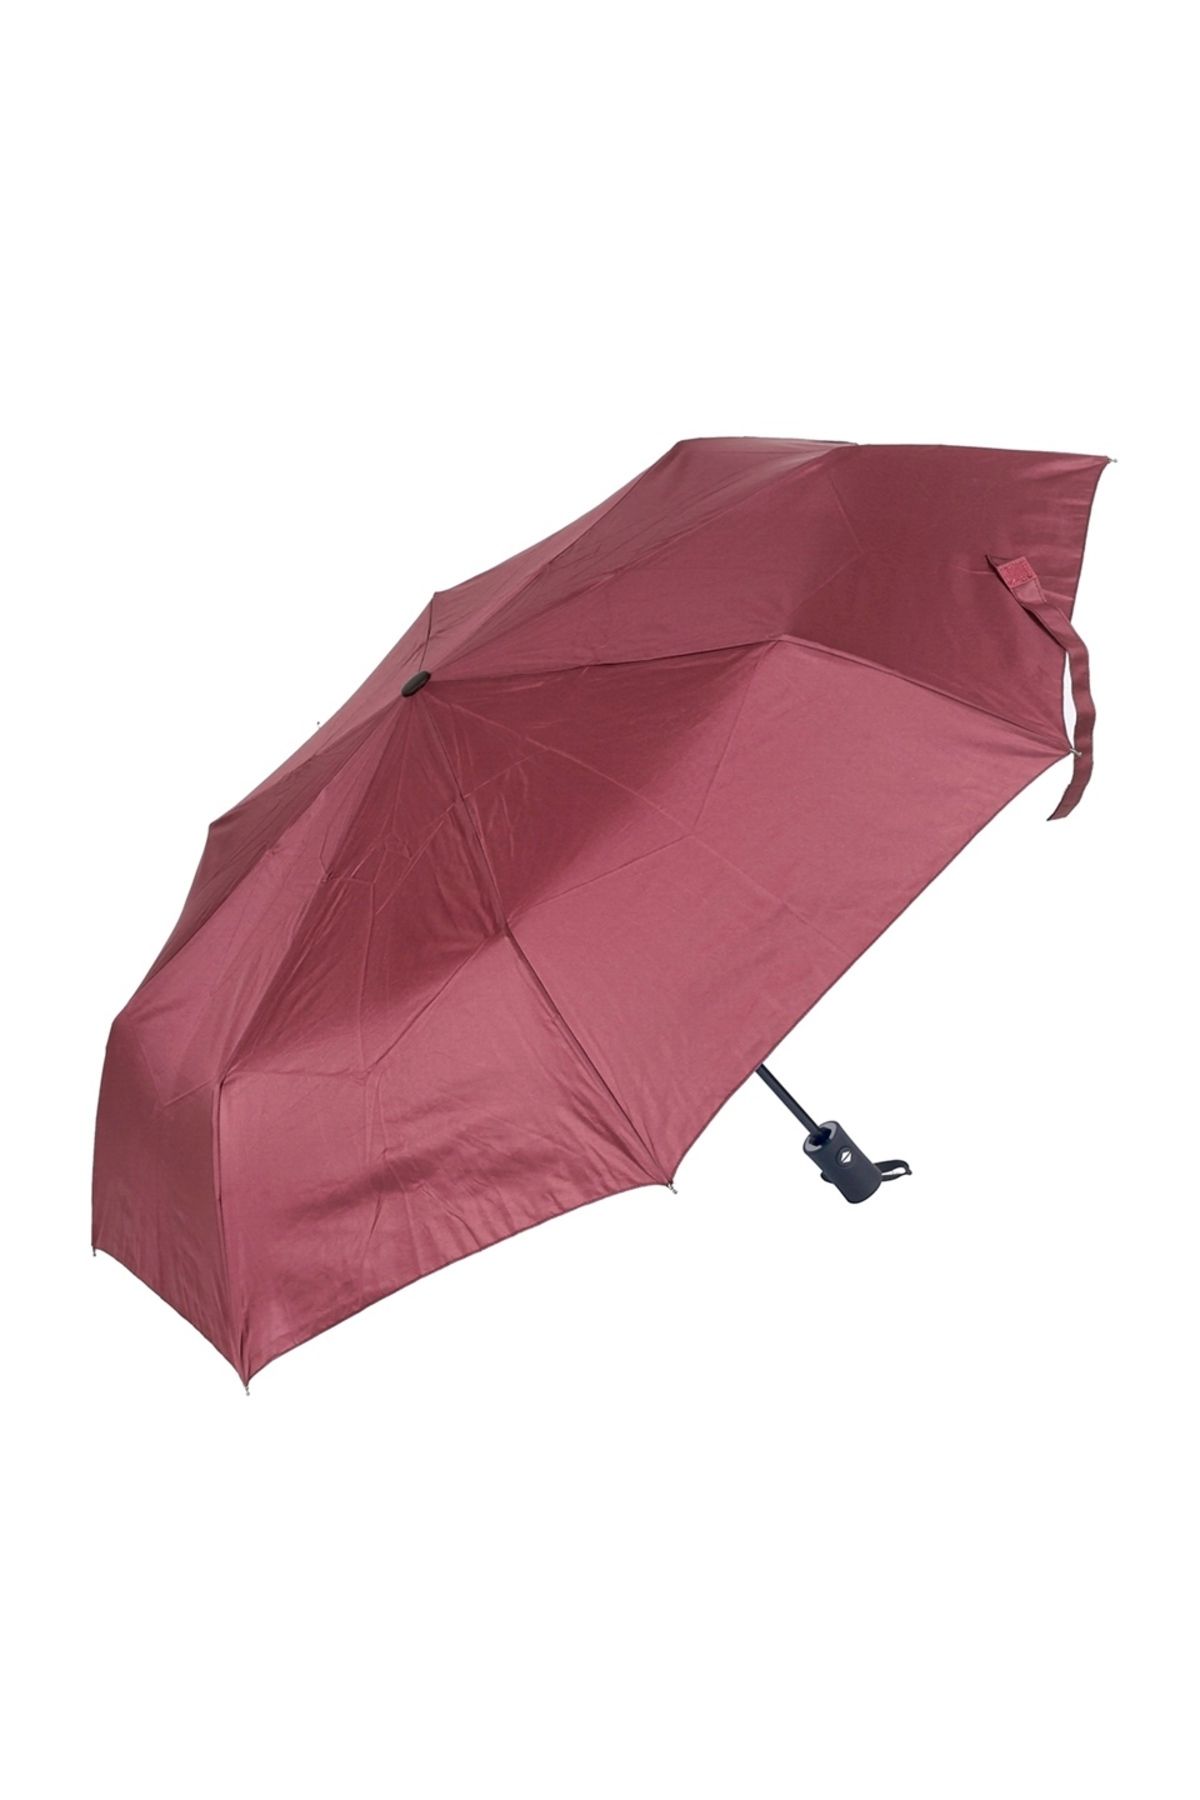 Marlux Bordo Tam Otomatik Kadın Şemsiye M21mar110lr002